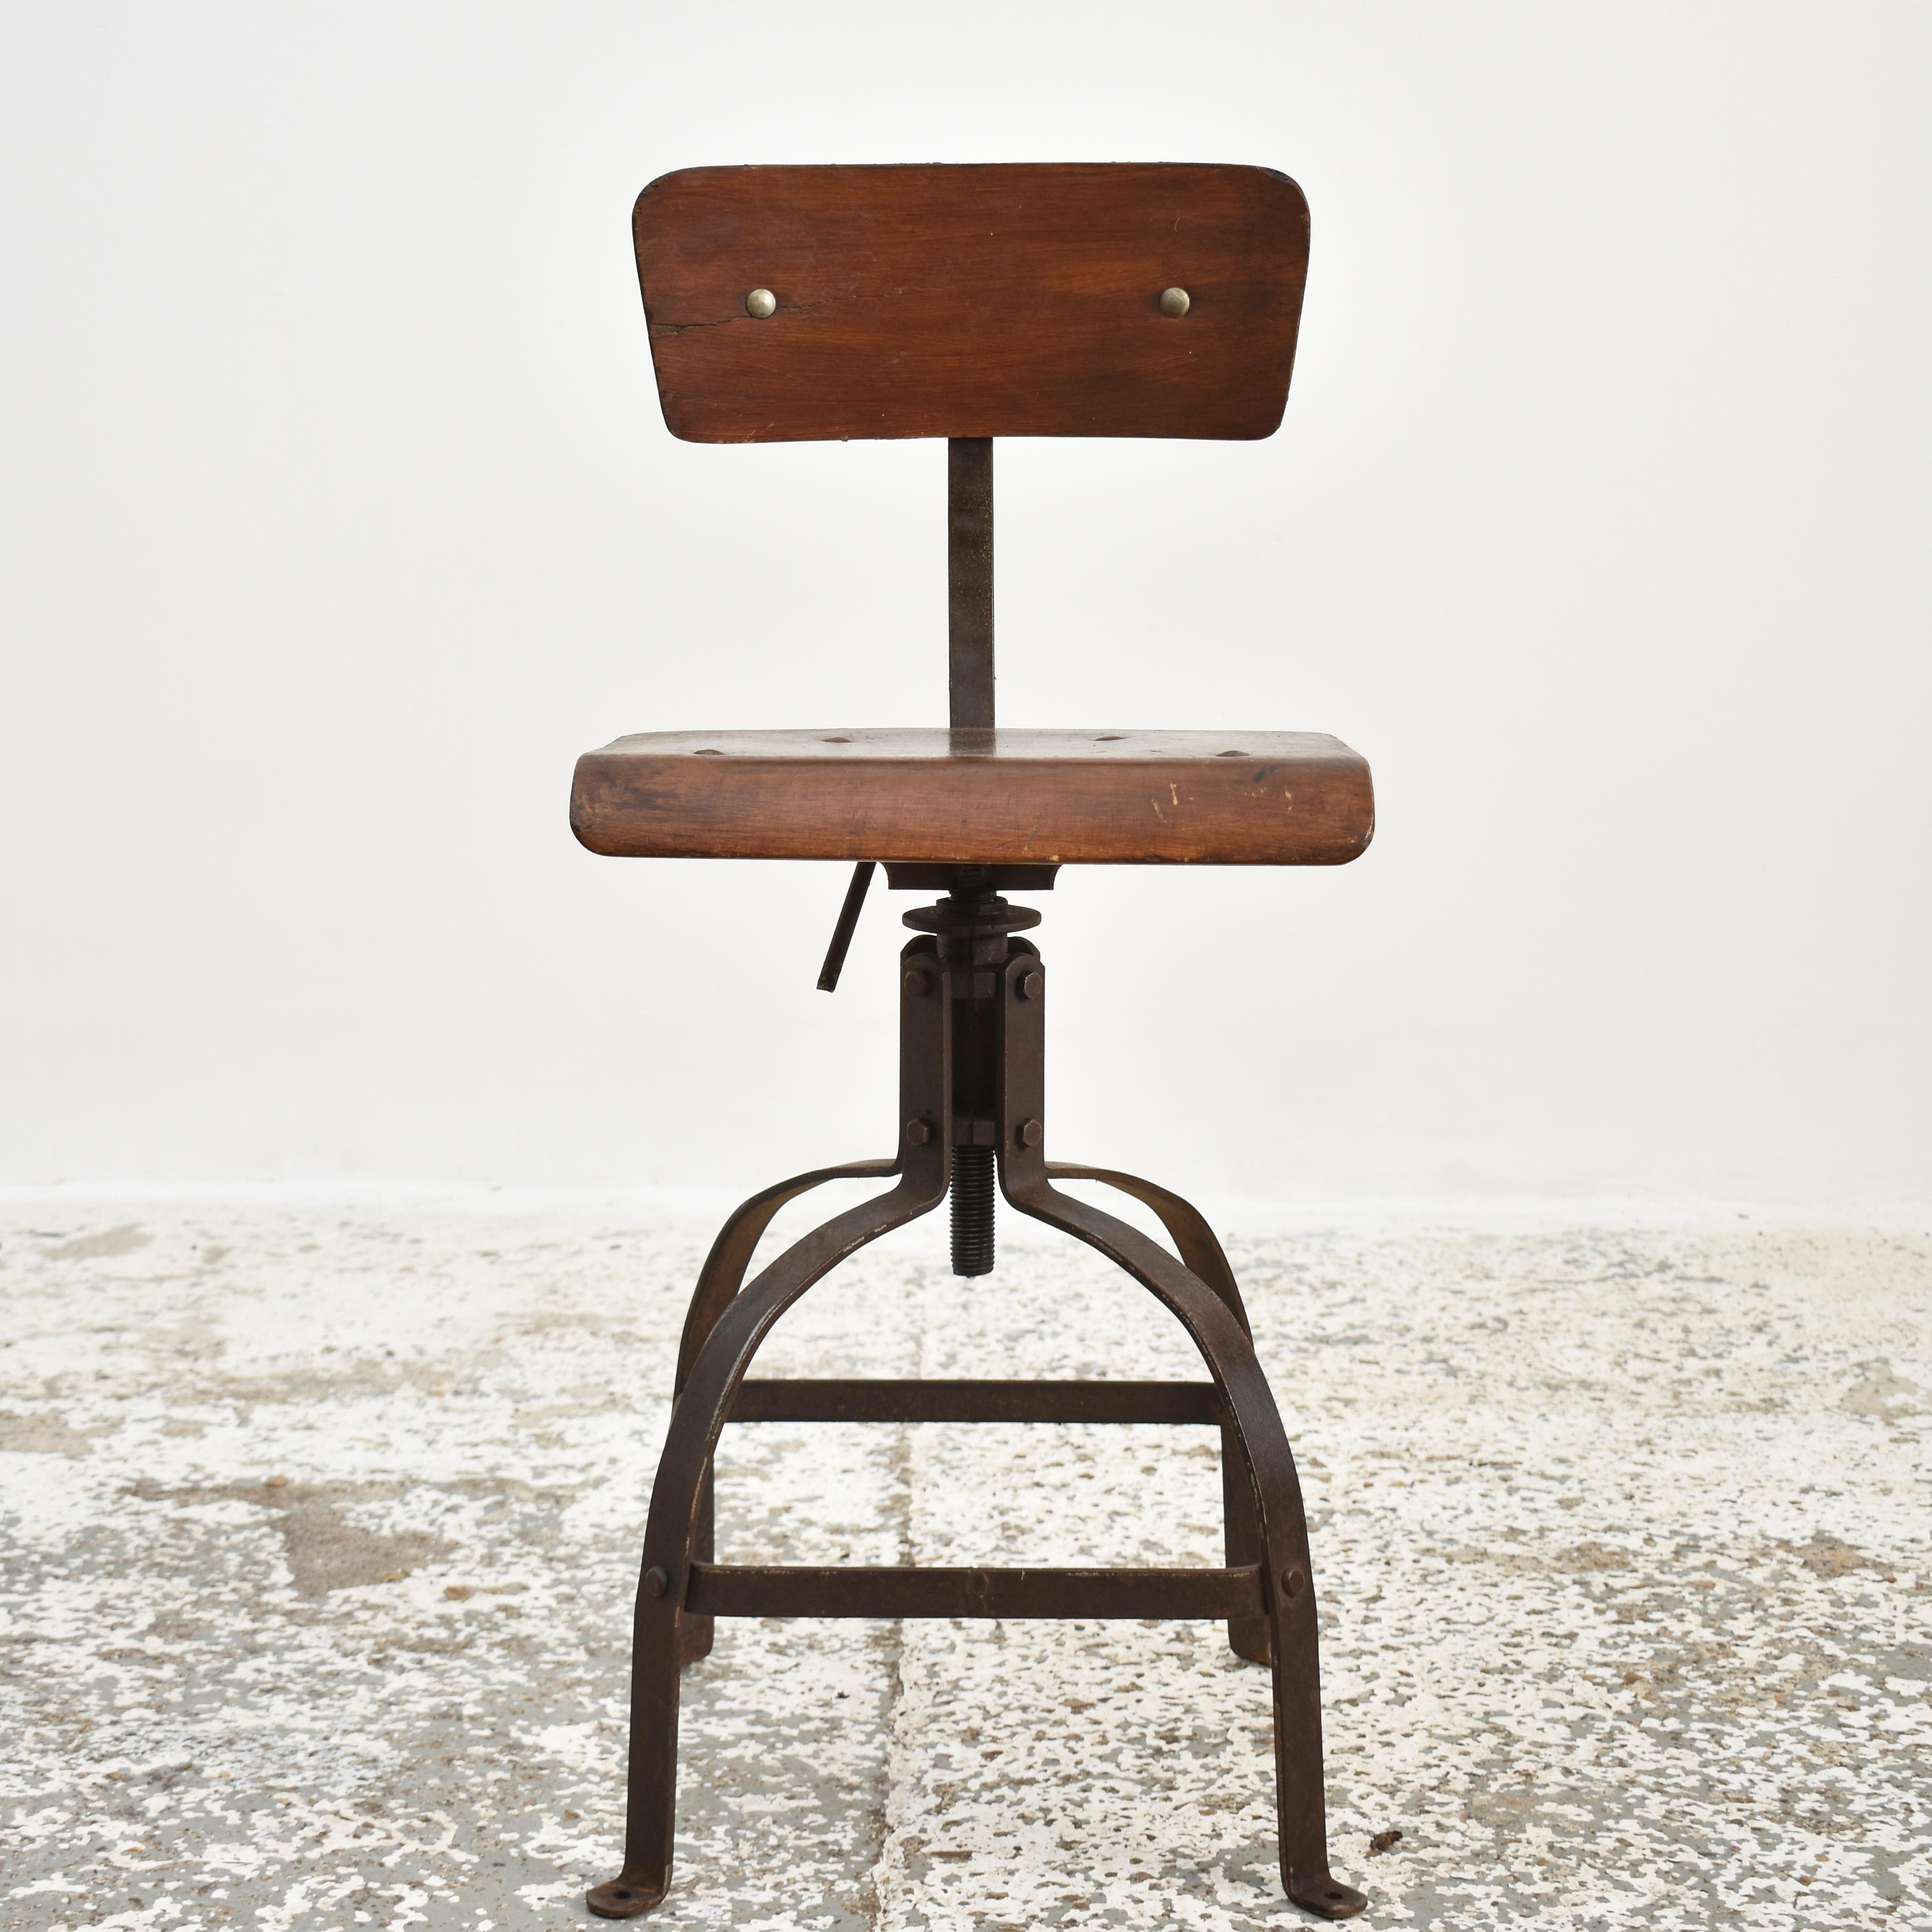 Chaise Bienaise originale française Modèle 204 - D

Une chaise industrielle Bienaise originale. Un classique de l'industrie française des années 1940, produit par les frères Nelson - modèle n° 204. Il s'agit d'une chaise solide dont l'assise et le